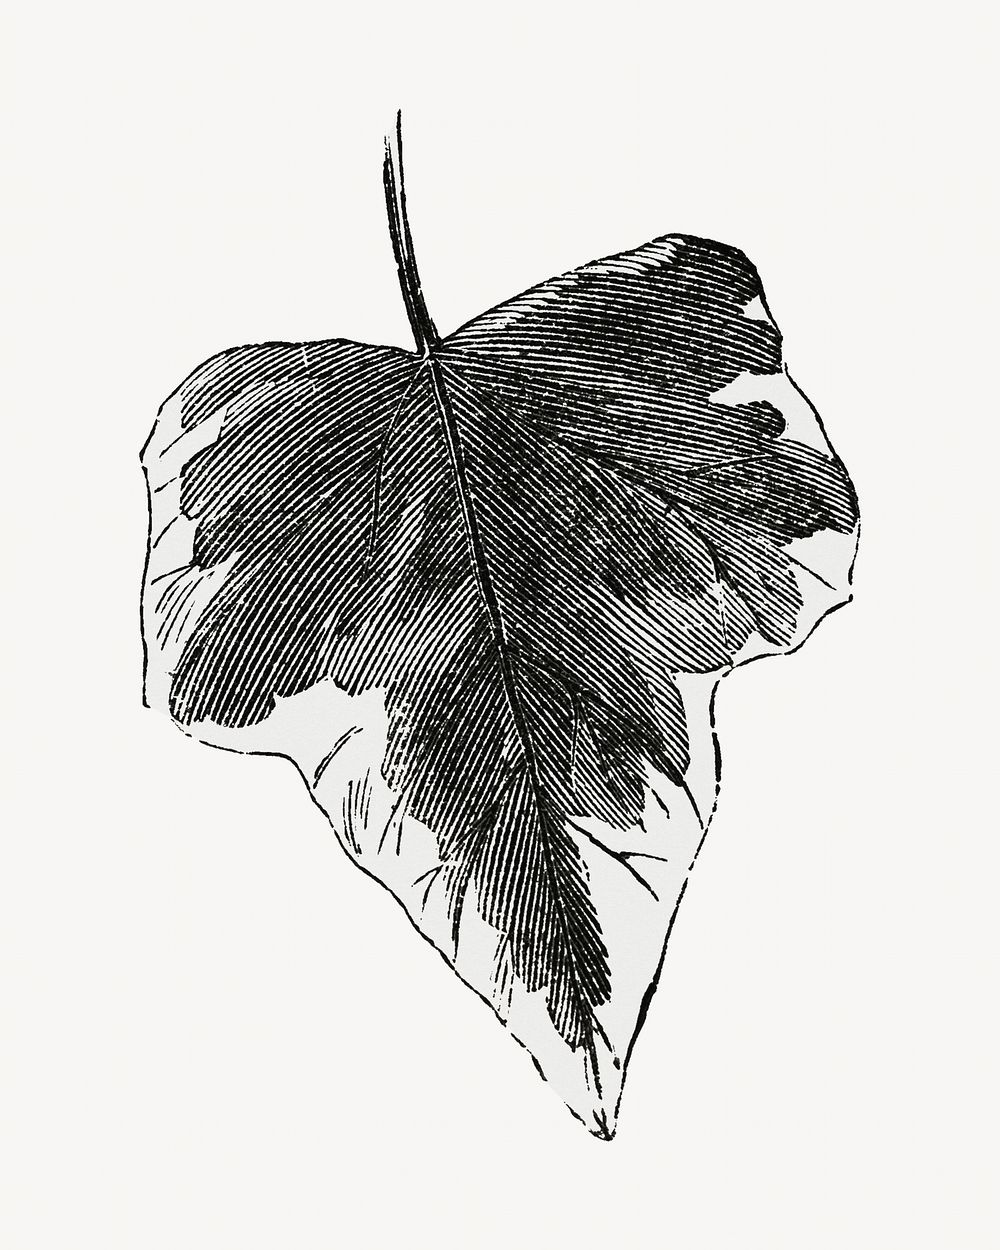 Ivy leaf vintage illustration, black and white design